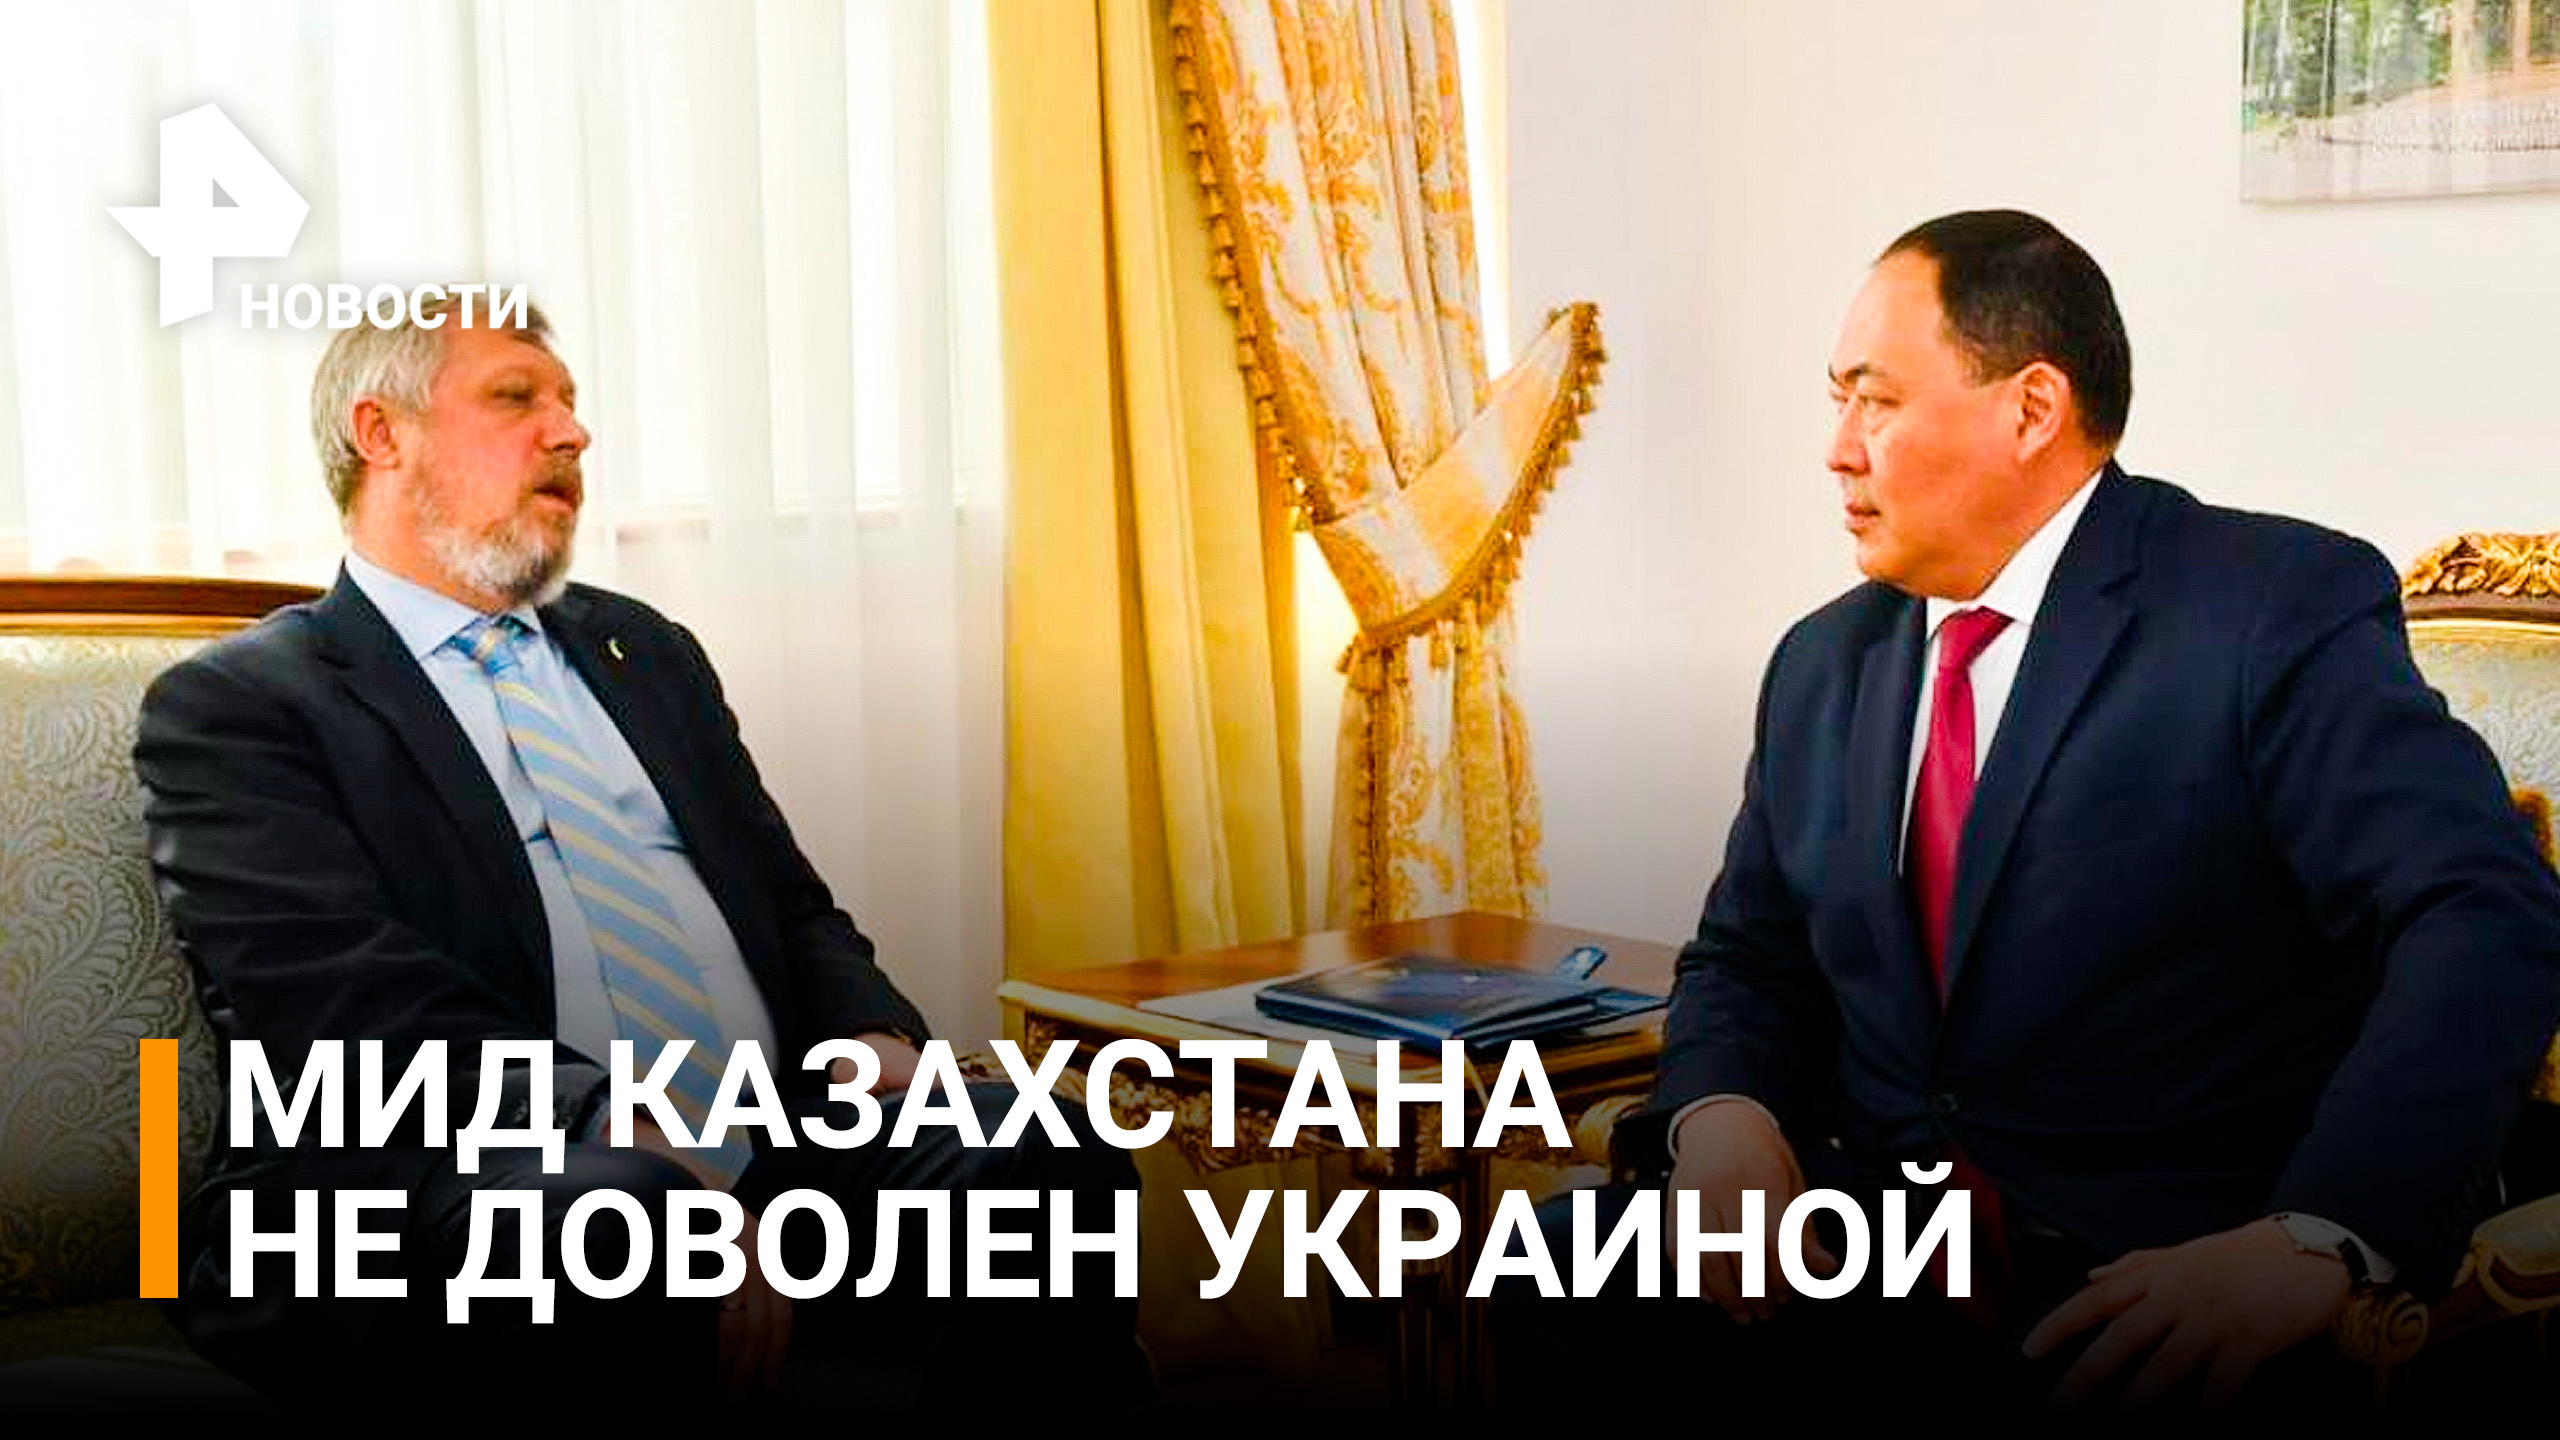 Посла Украины вызвали в МИД Казахстана из-за высказывания о русских / РЕН Новости